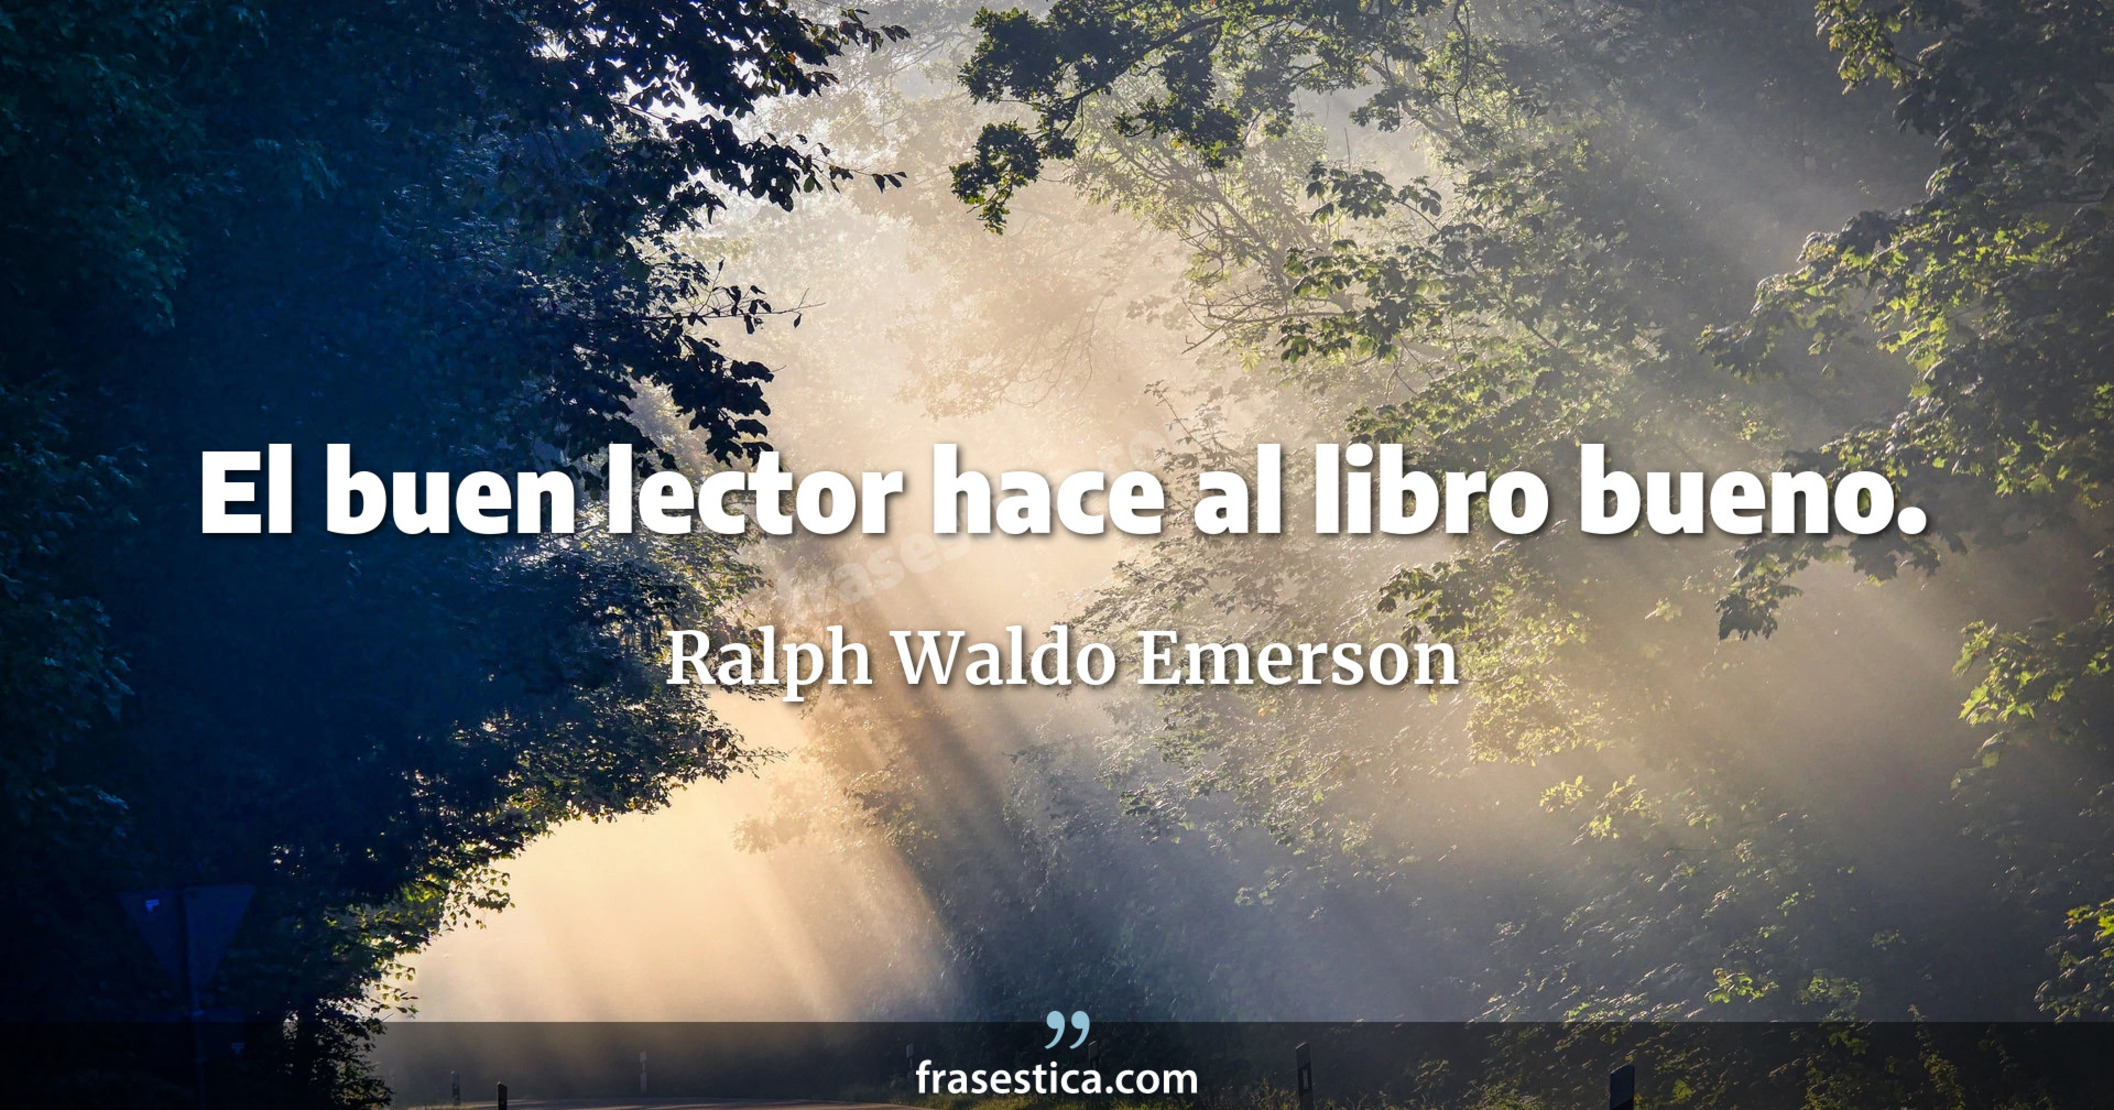 El buen lector hace al libro bueno. - Ralph Waldo Emerson